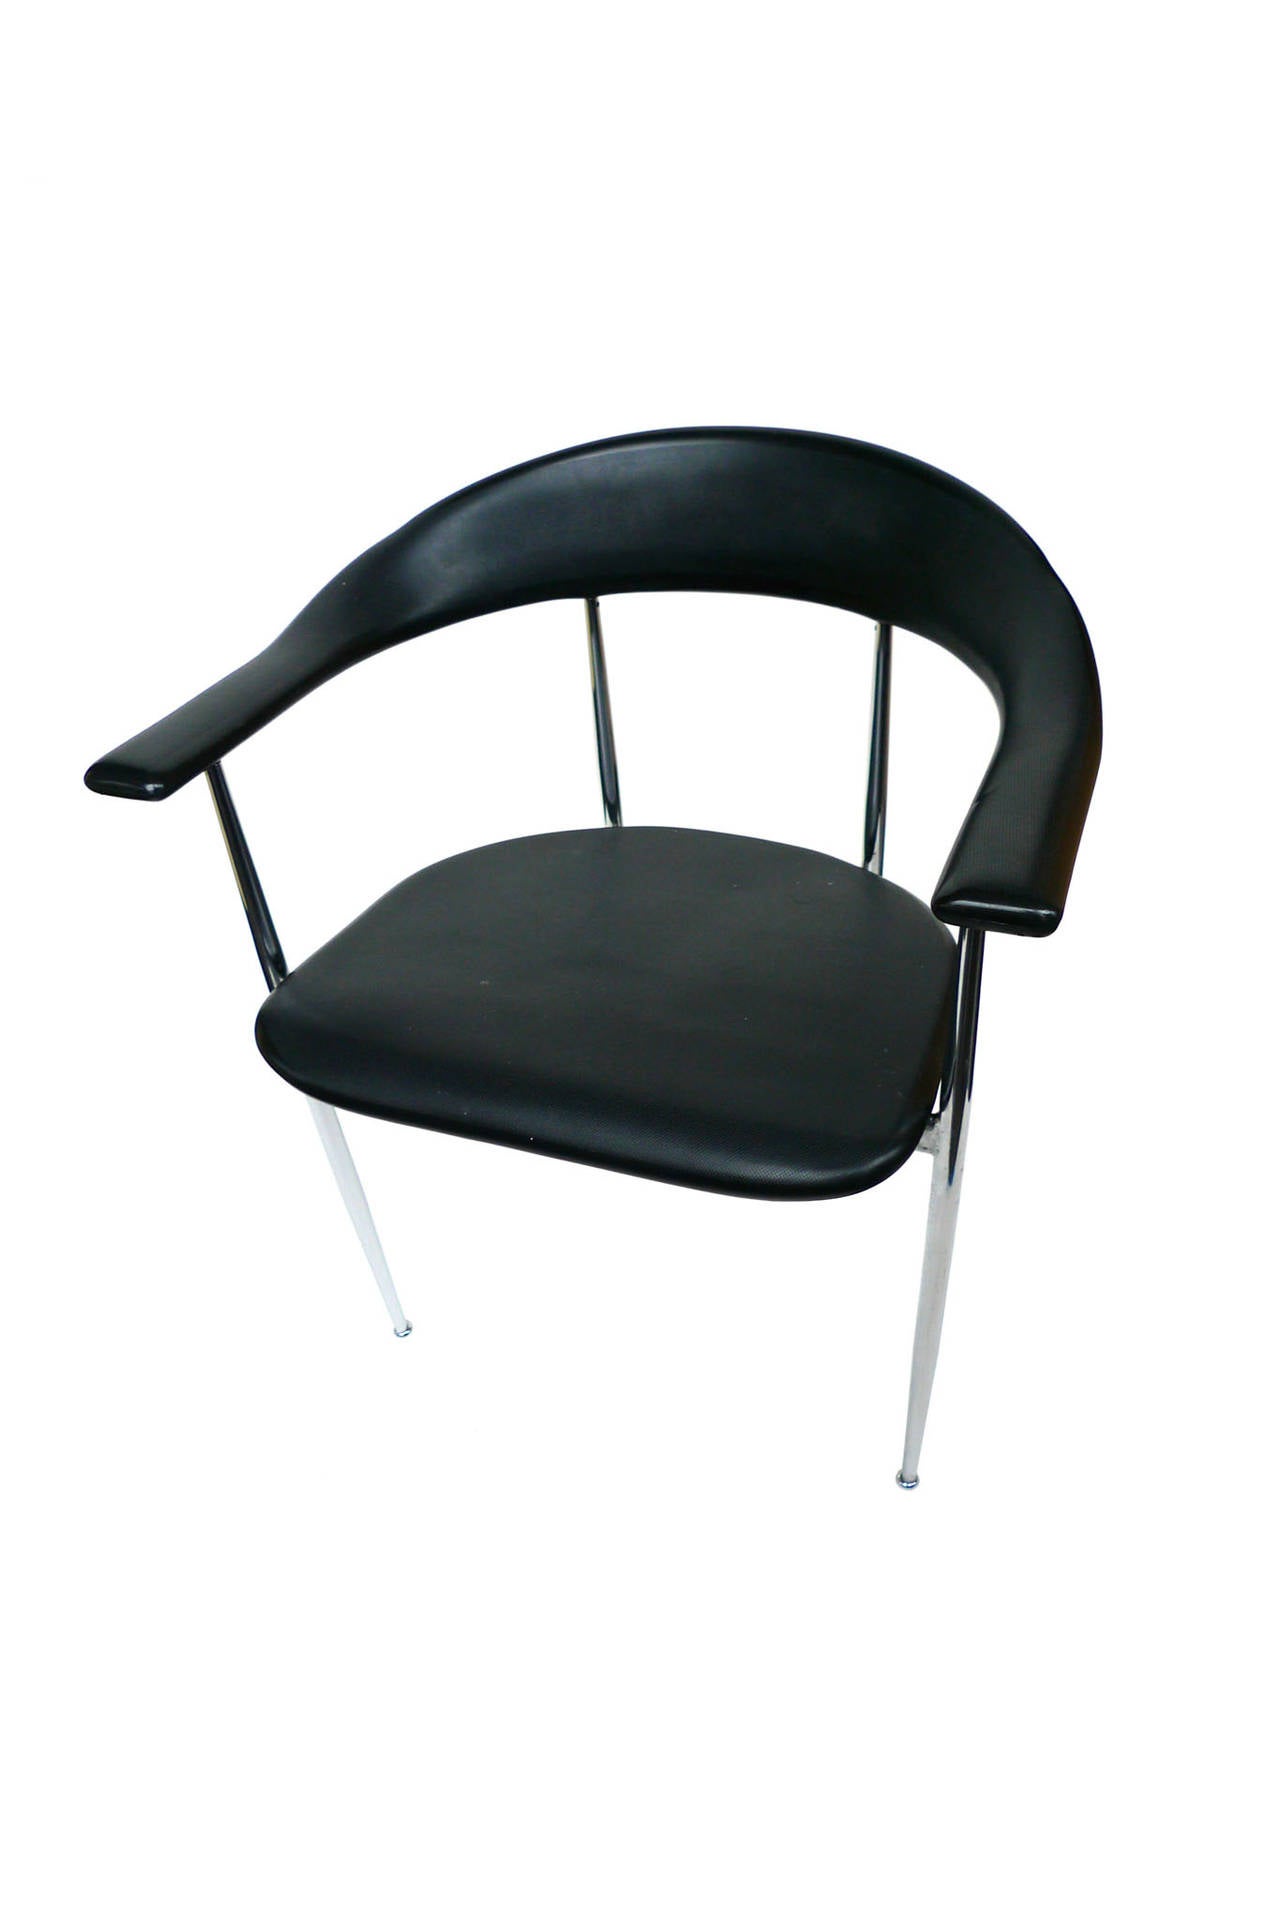 Ces 6 chaises de salle à manger Minimalist Fasem sont confortables et robustes. Le dossier et l'assise sont en caoutchouc noir moulé, tandis que la base et les pieds sont chromés. Leur design se distingue par les bords arrondis, qui mettent en